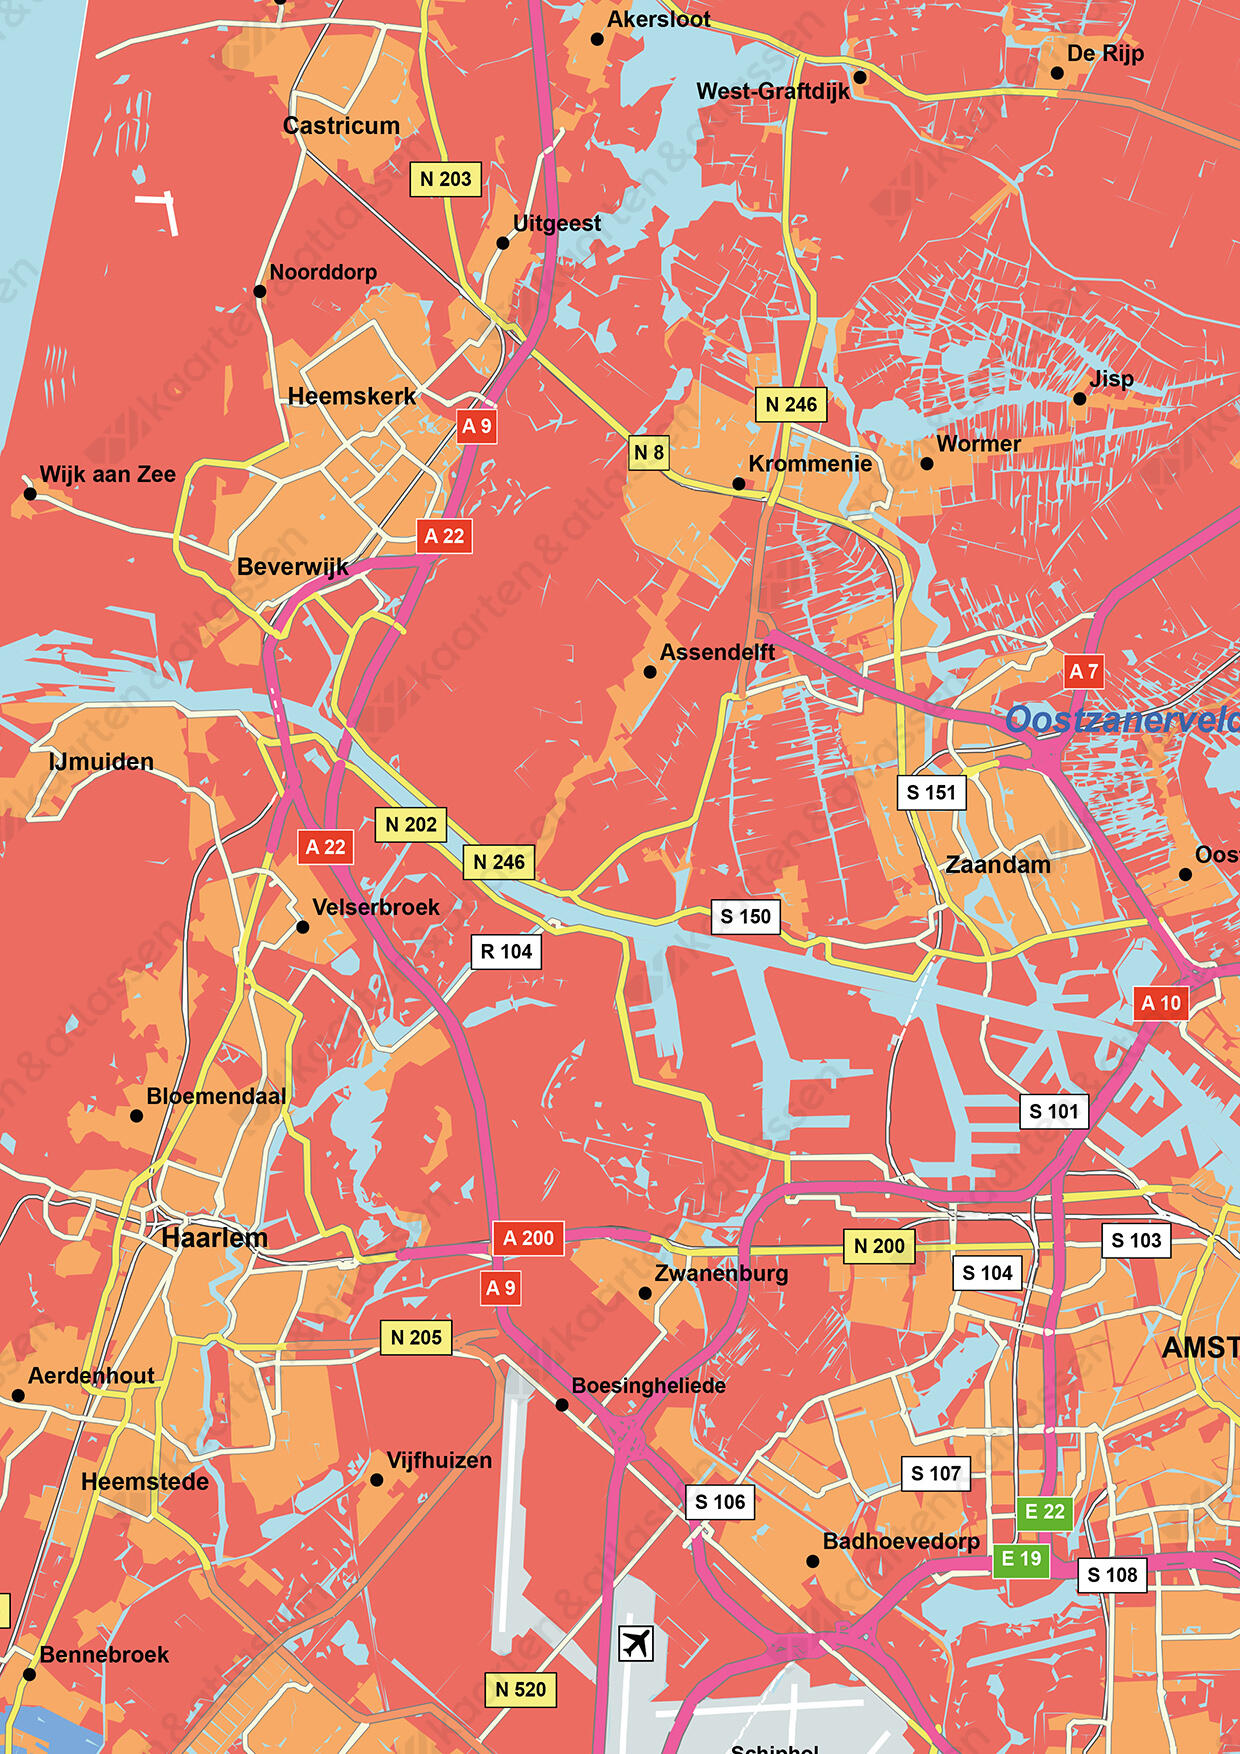 Regiokaart West Nederland